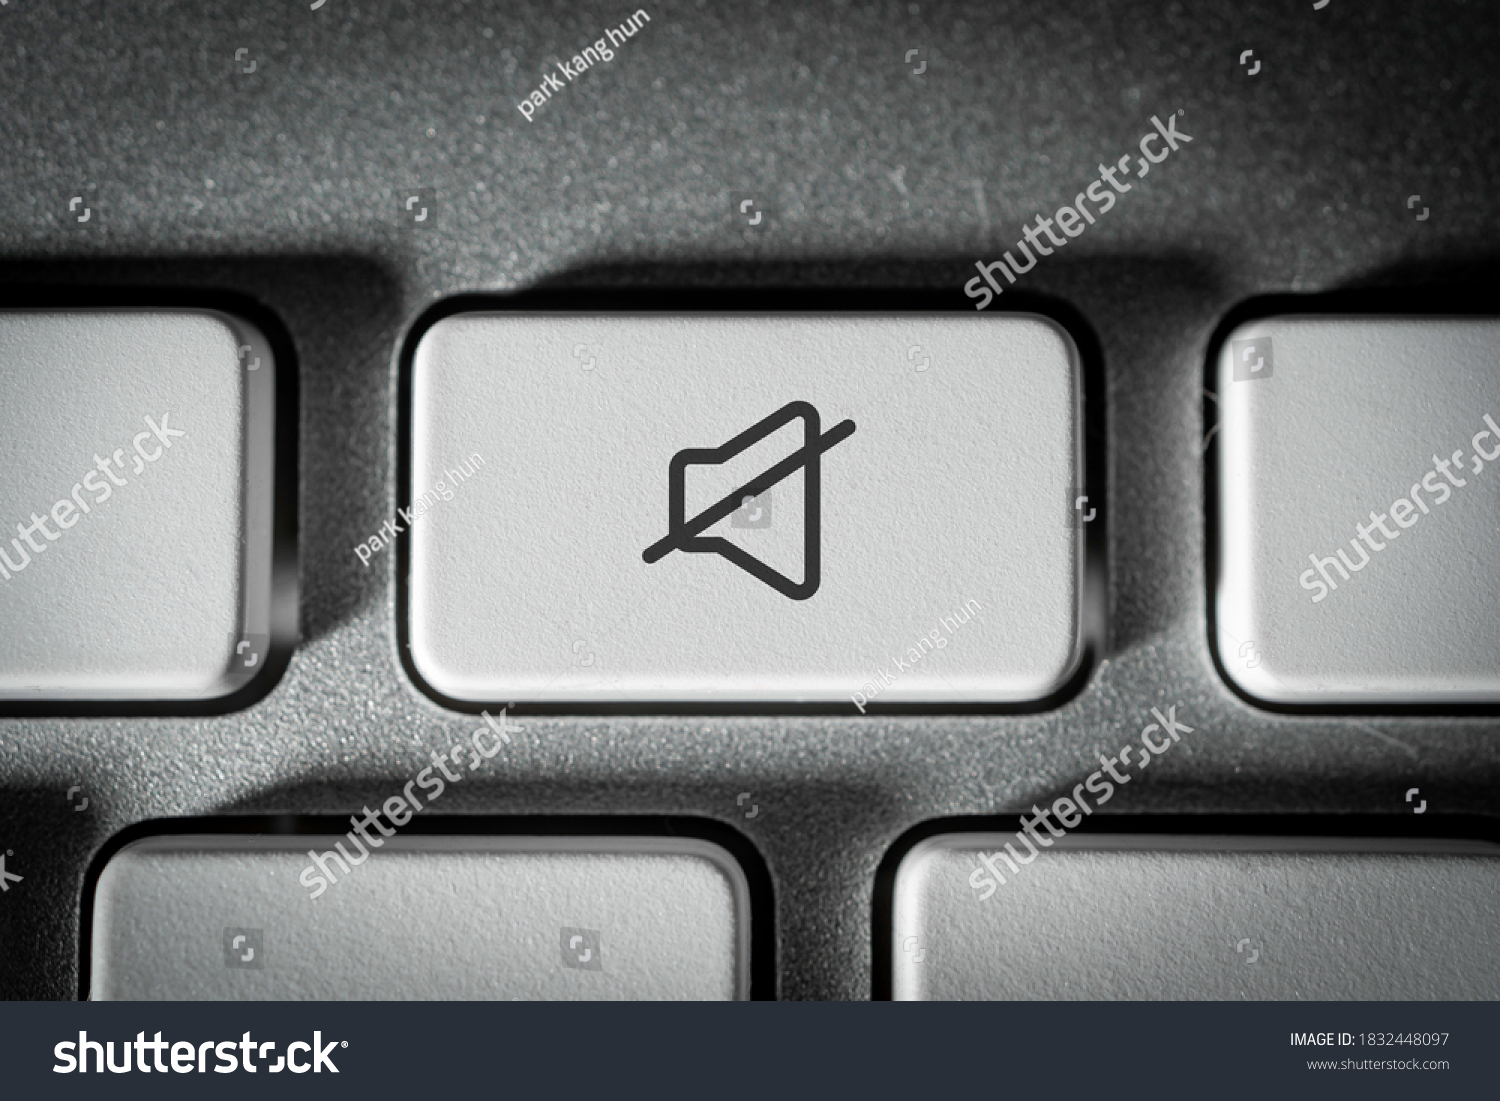 Mute key on a neat white keyboard #1832448097